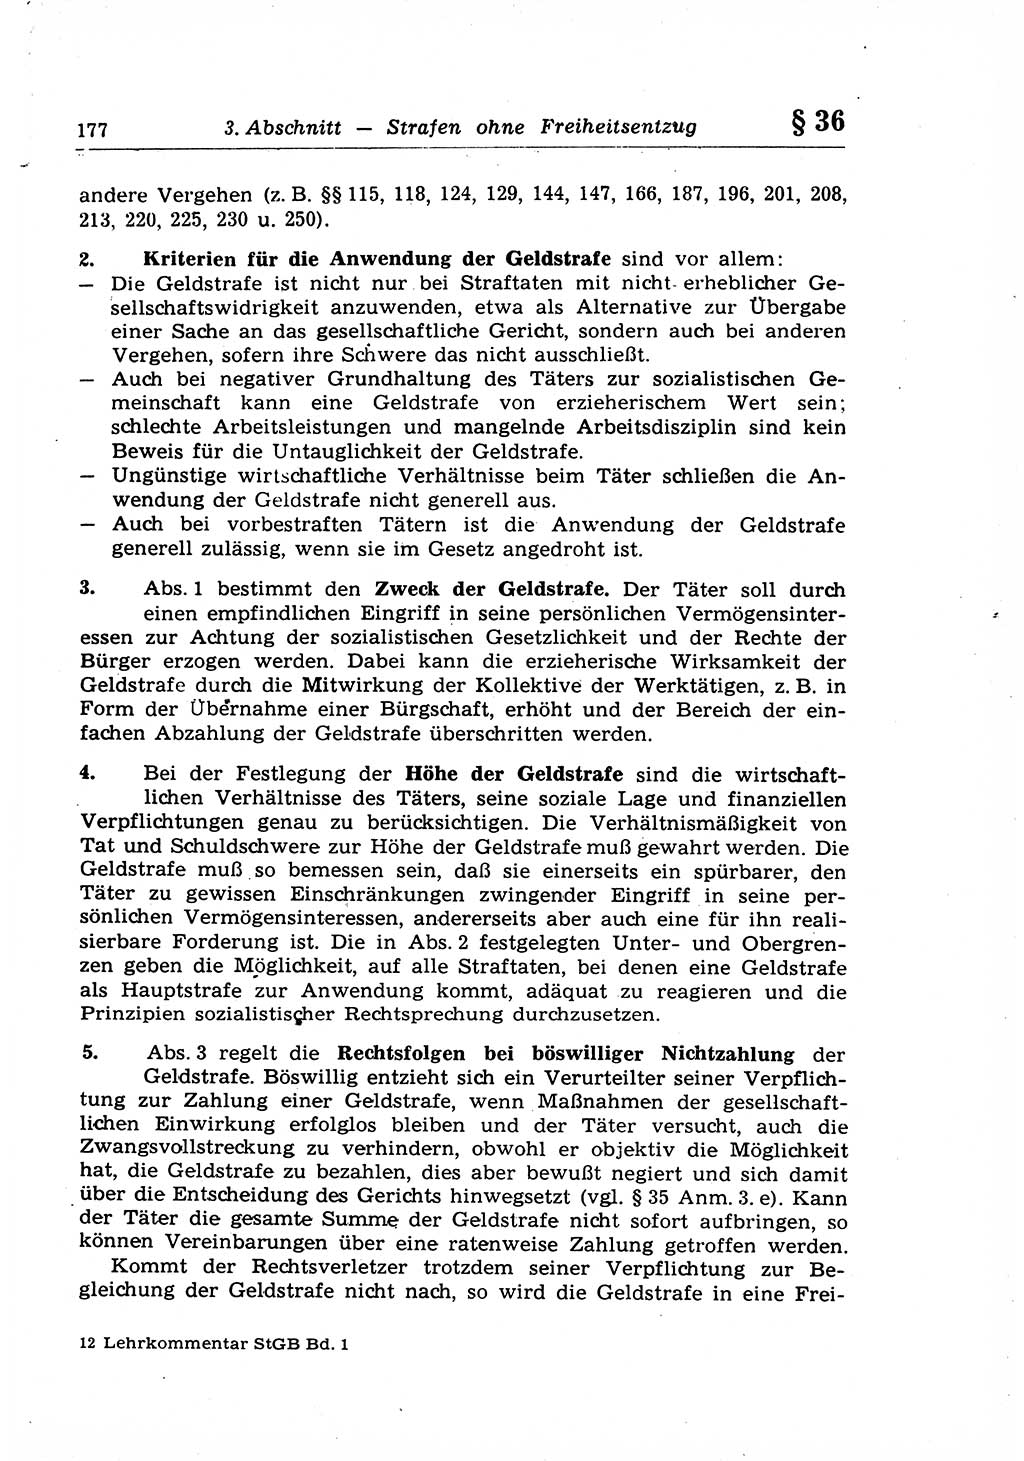 Strafrecht der Deutschen Demokratischen Republik (DDR), Lehrkommentar zum Strafgesetzbuch (StGB), Allgemeiner Teil 1969, Seite 177 (Strafr. DDR Lehrkomm. StGB AT 1969, S. 177)